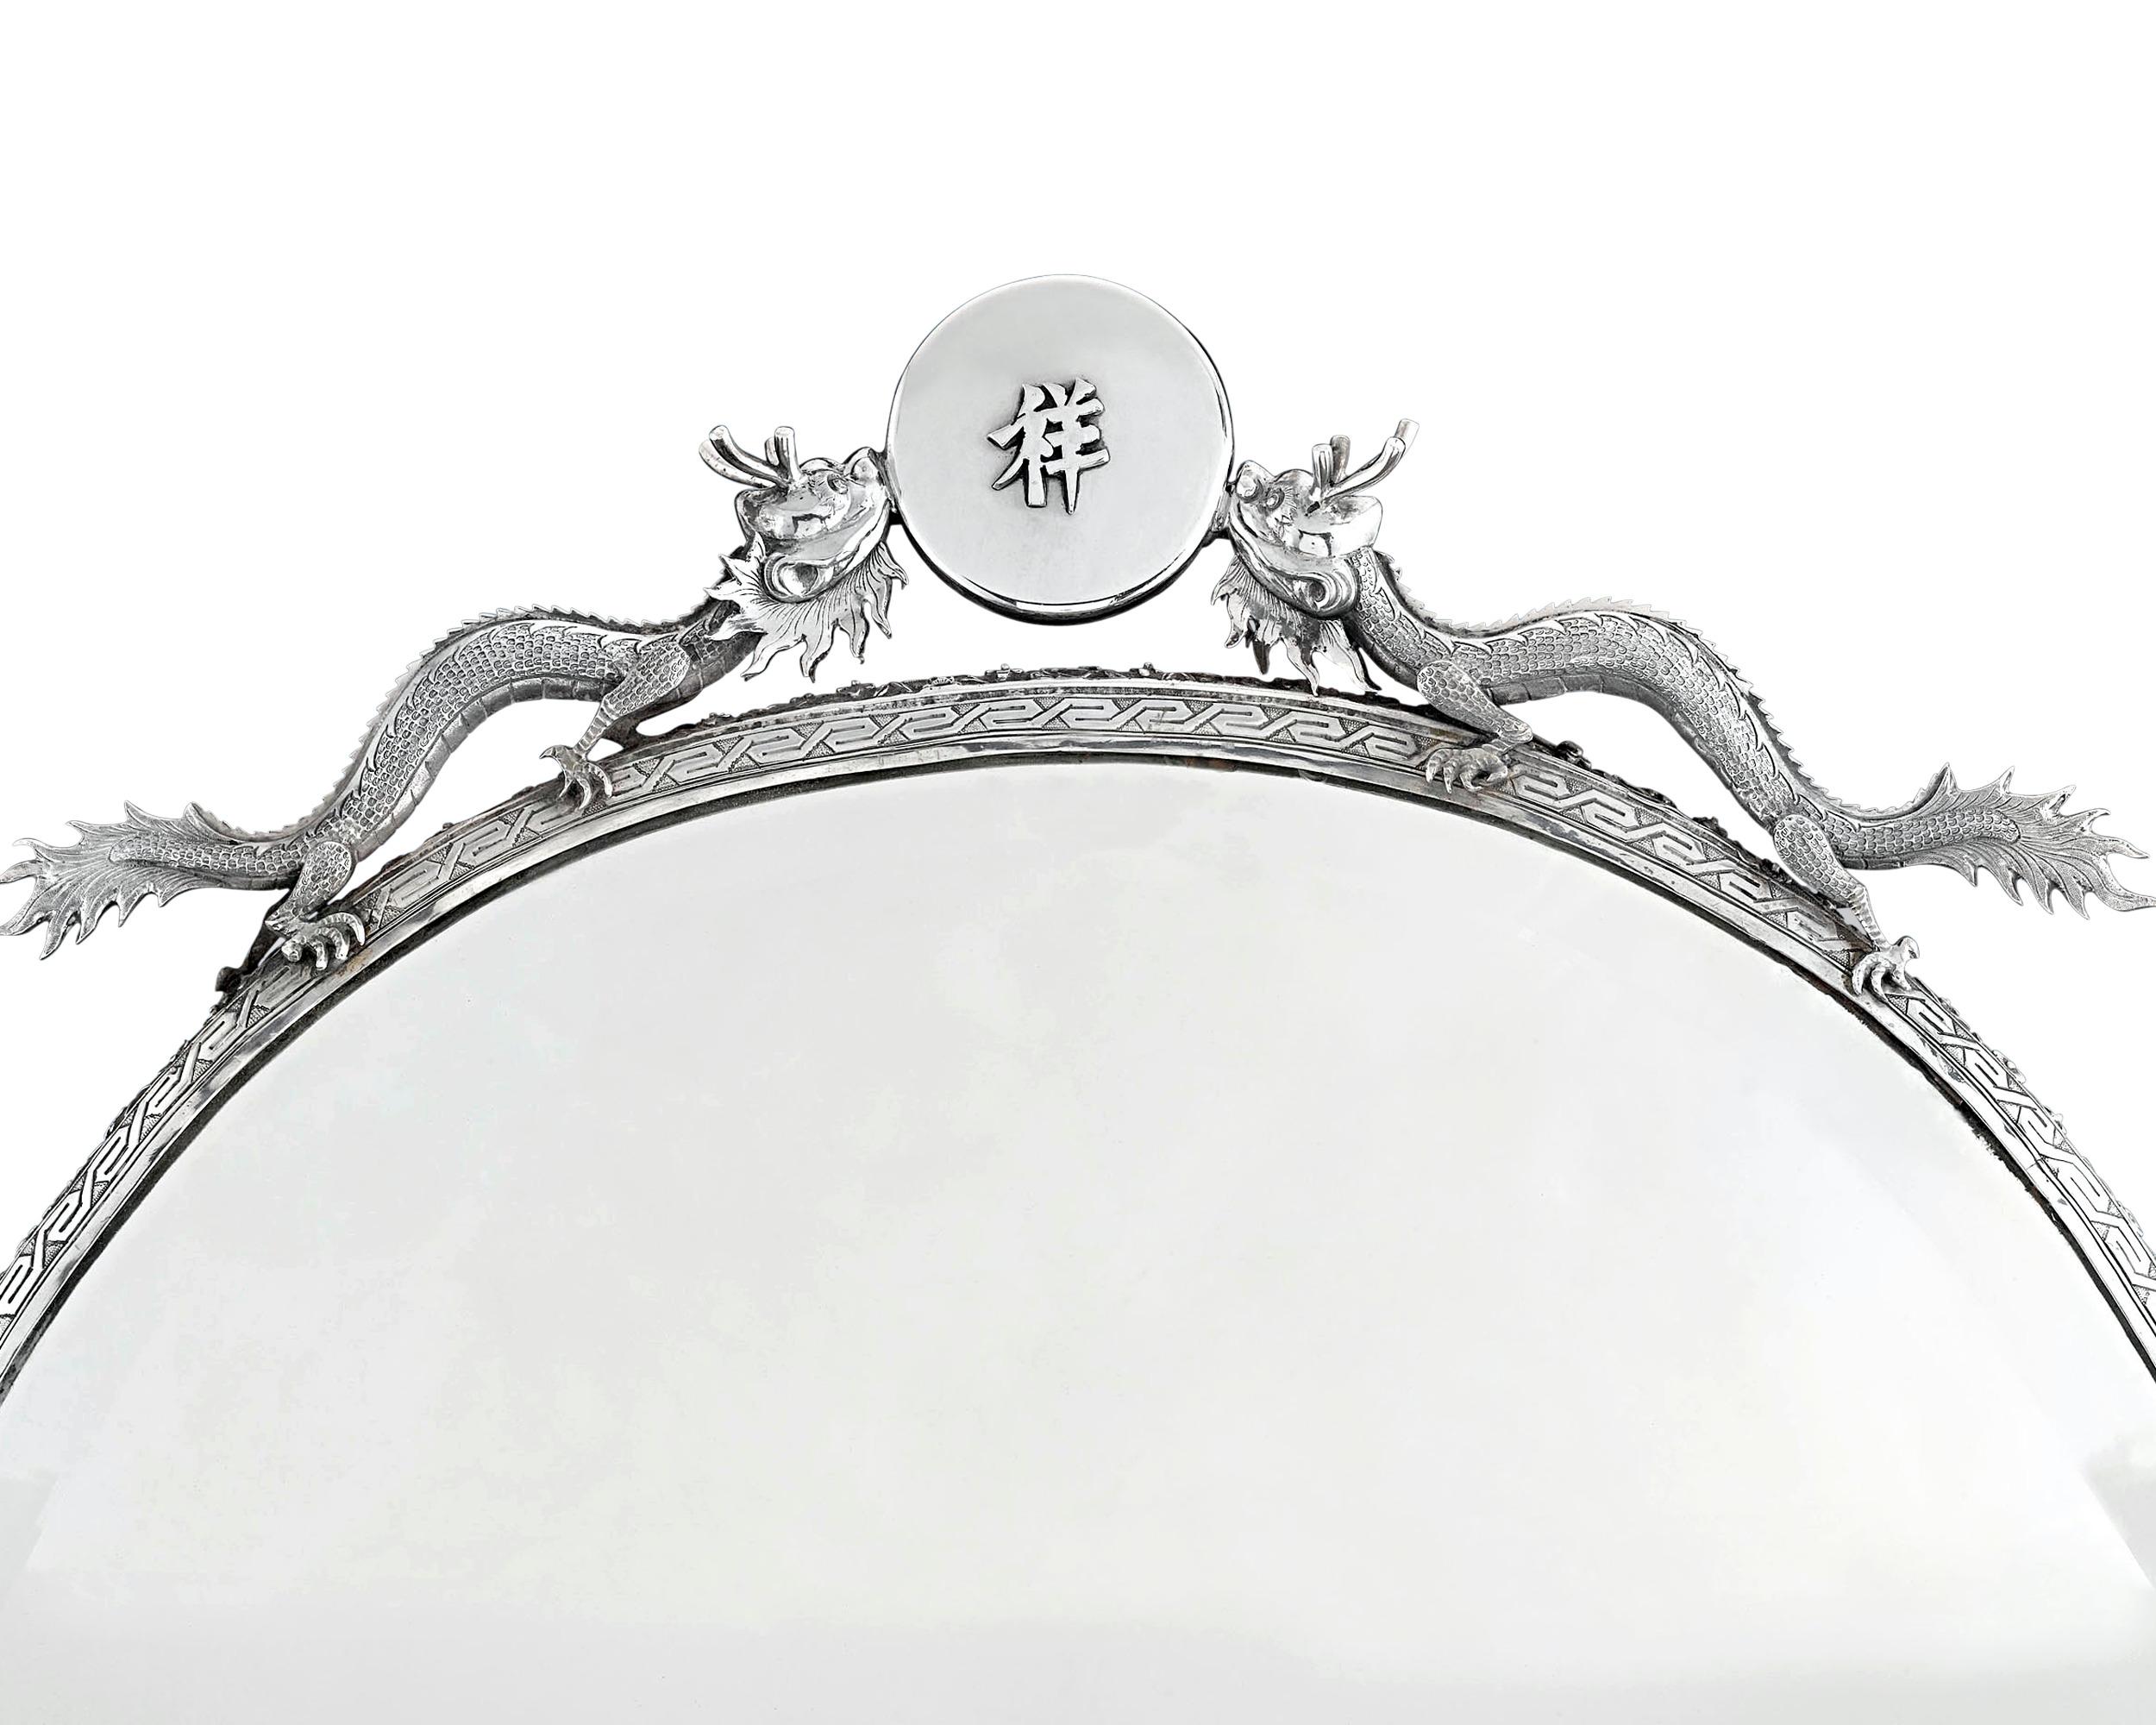 Ce miroir exquis en argent exporté de Chine est une œuvre d'une beauté exotique. D'une forme élégante et d'une taille monumentale, ce miroir est maintenu dans un cadre en argent d'un art extraordinaire, avec une bordure florale ciselée et gravée, et